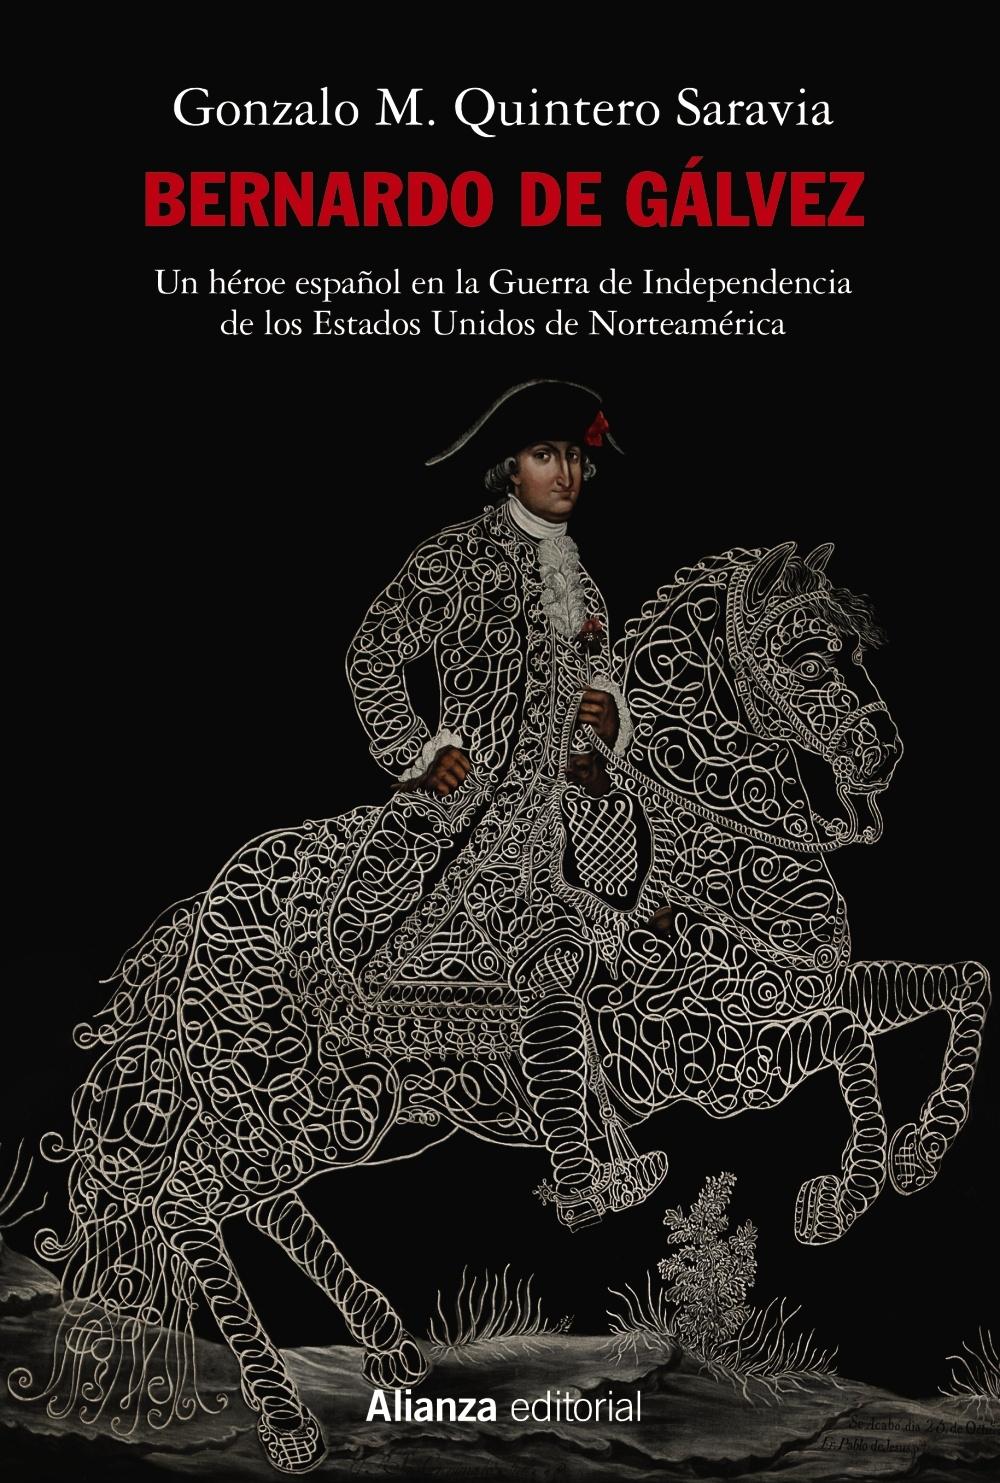 Bernardo de Gálvez "Un héroe español en la Guerra de Independencia de los Estados Unidos de"